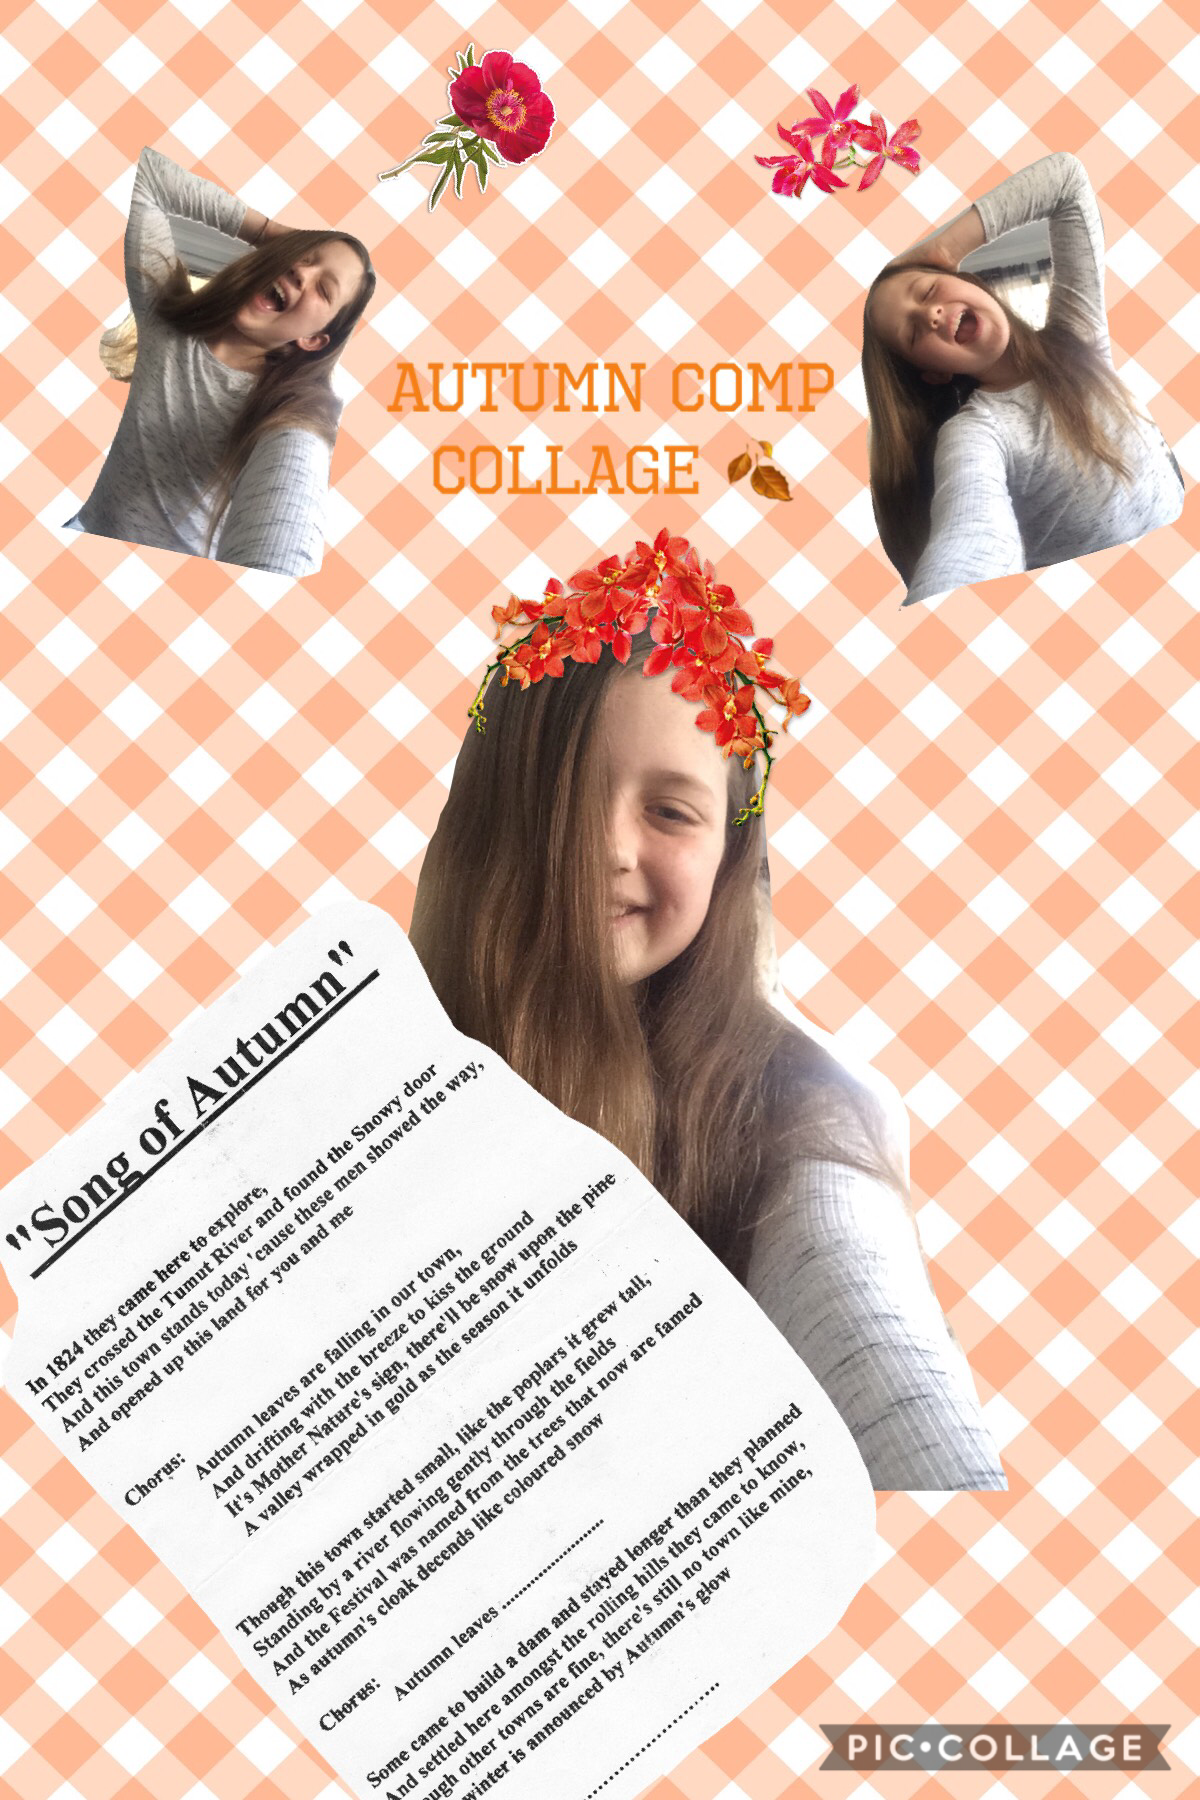 Autumn comp collage